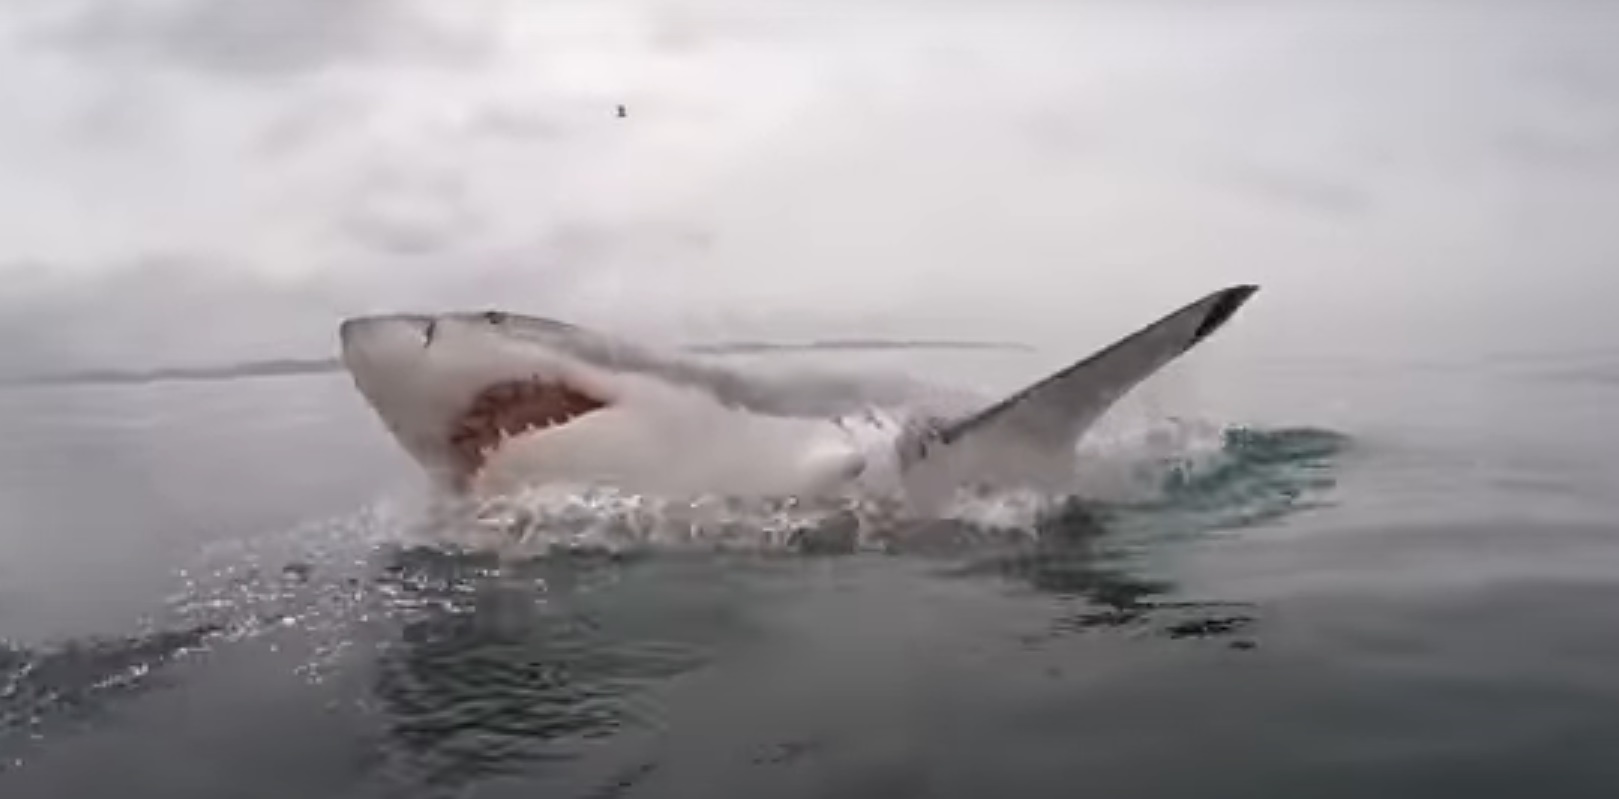 haaien in noordzee